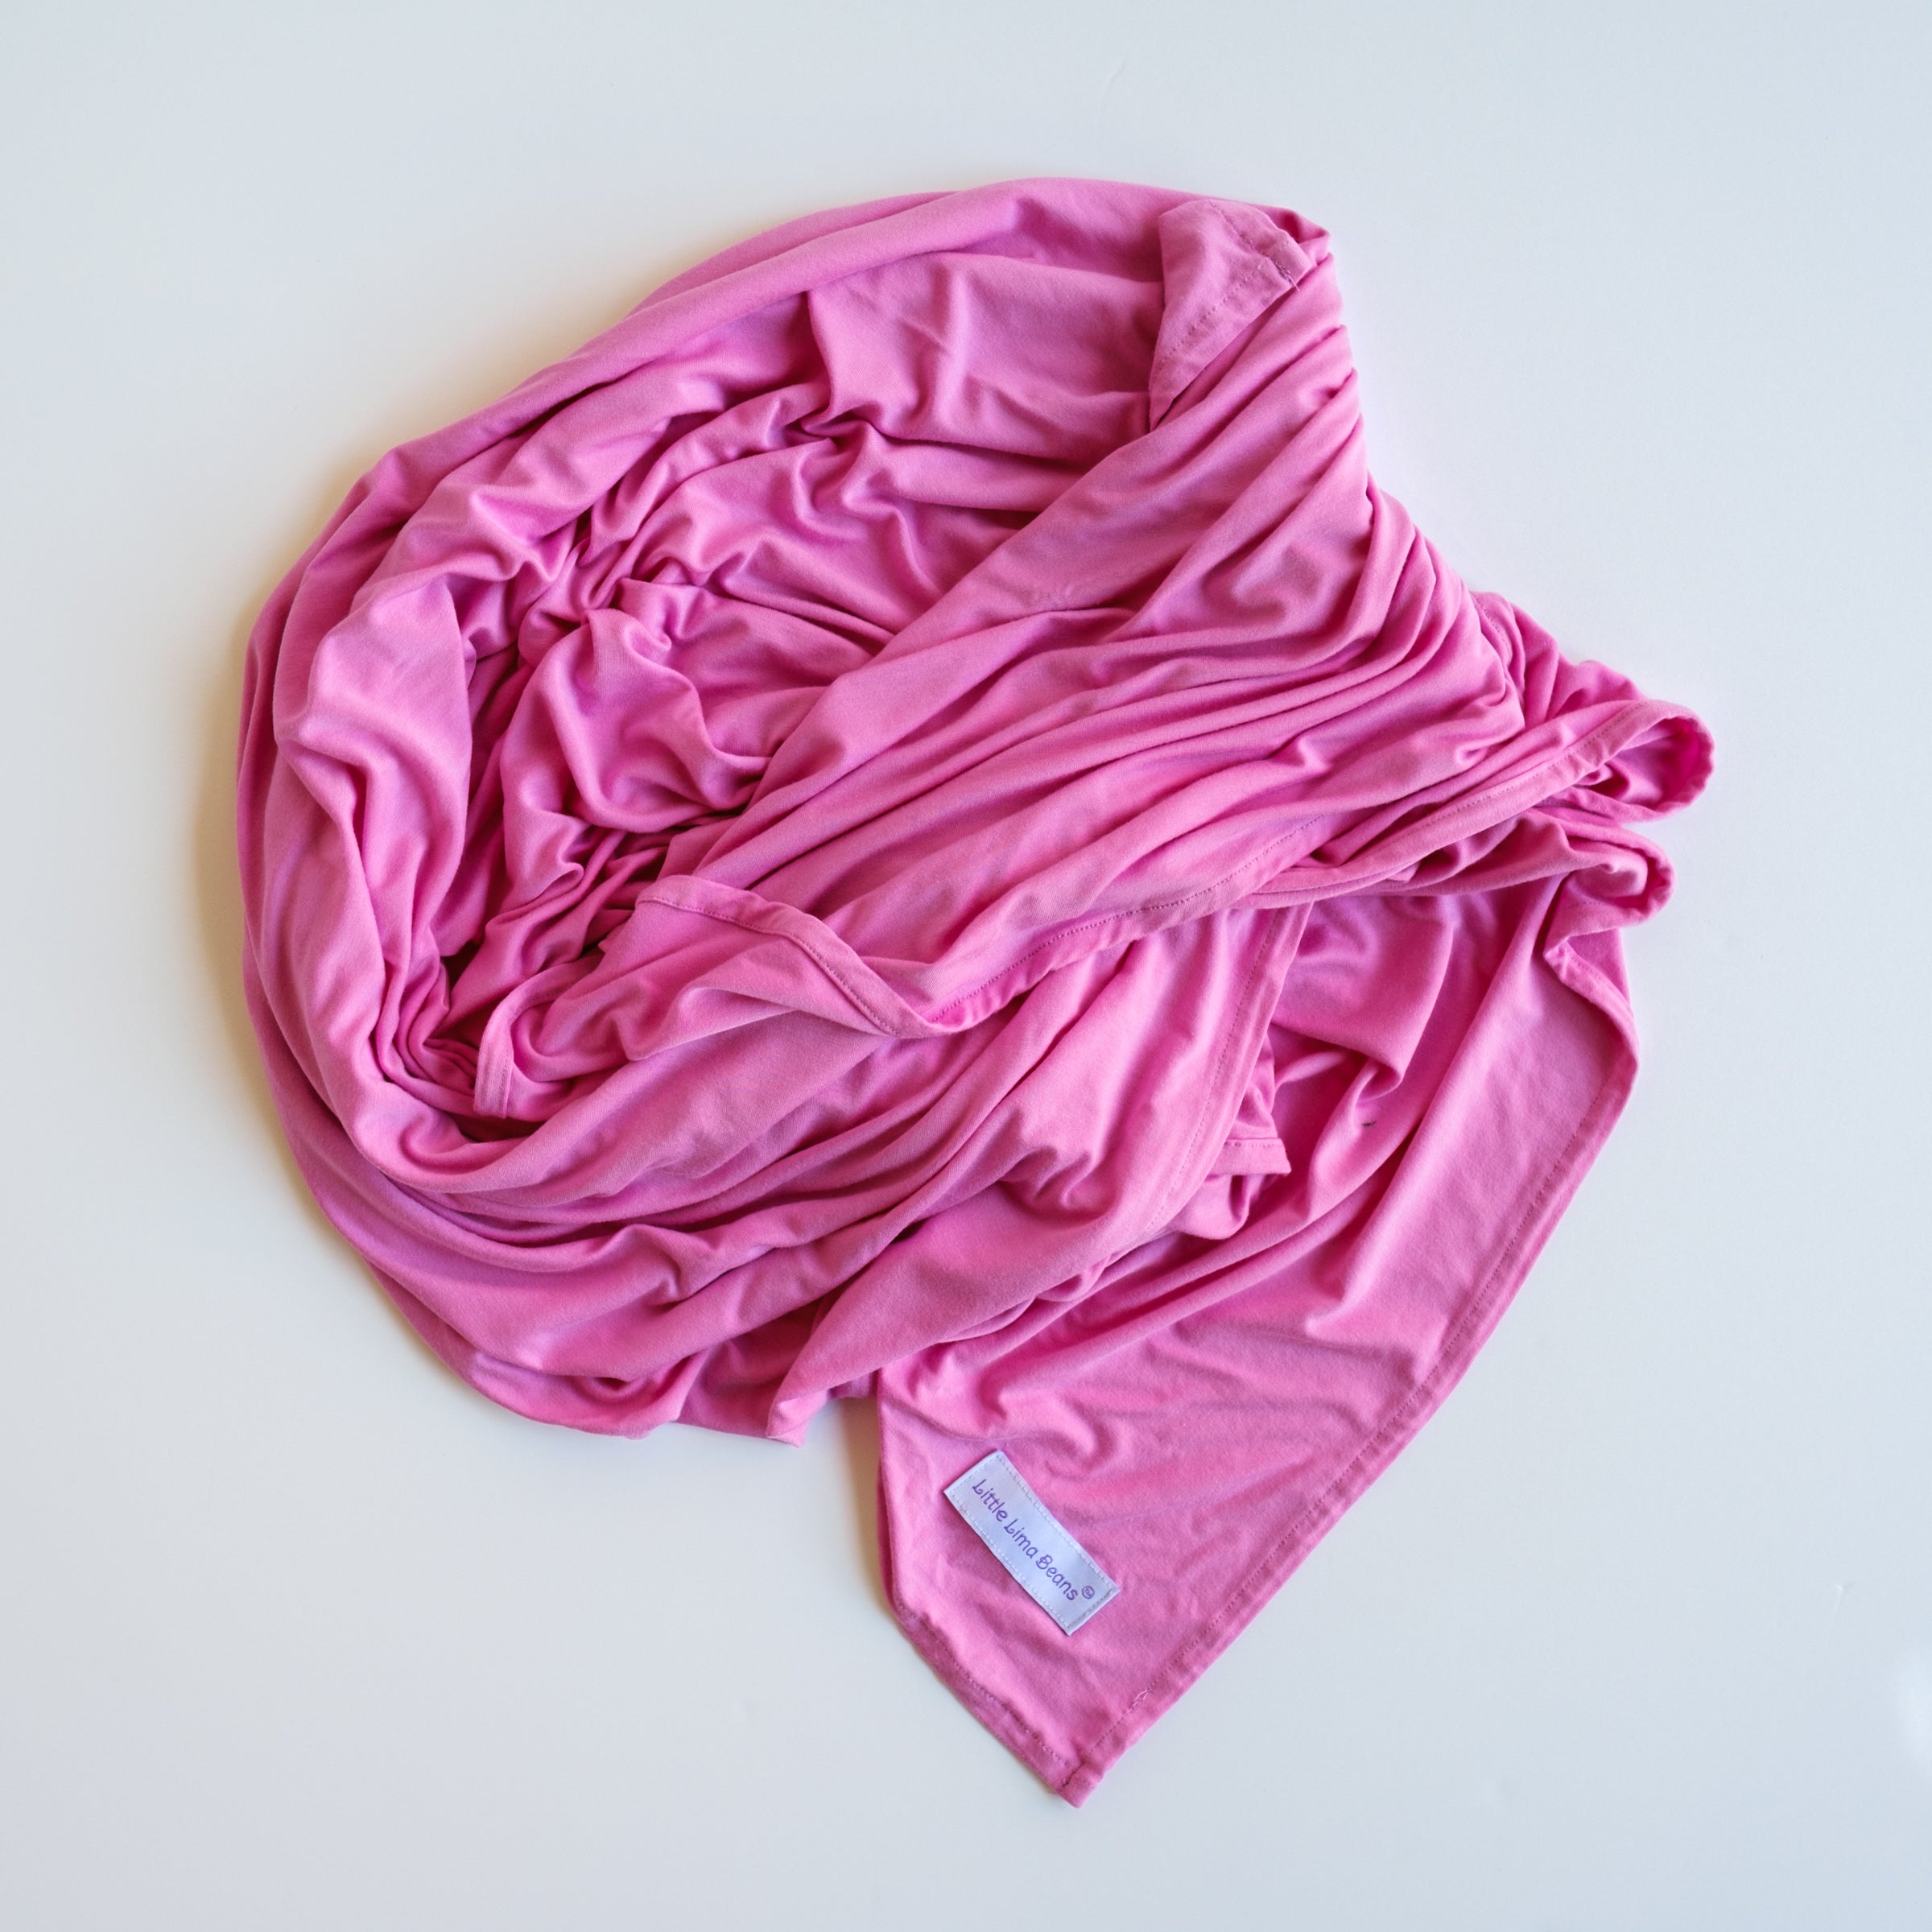 Petal Pink Swaddle Blanket